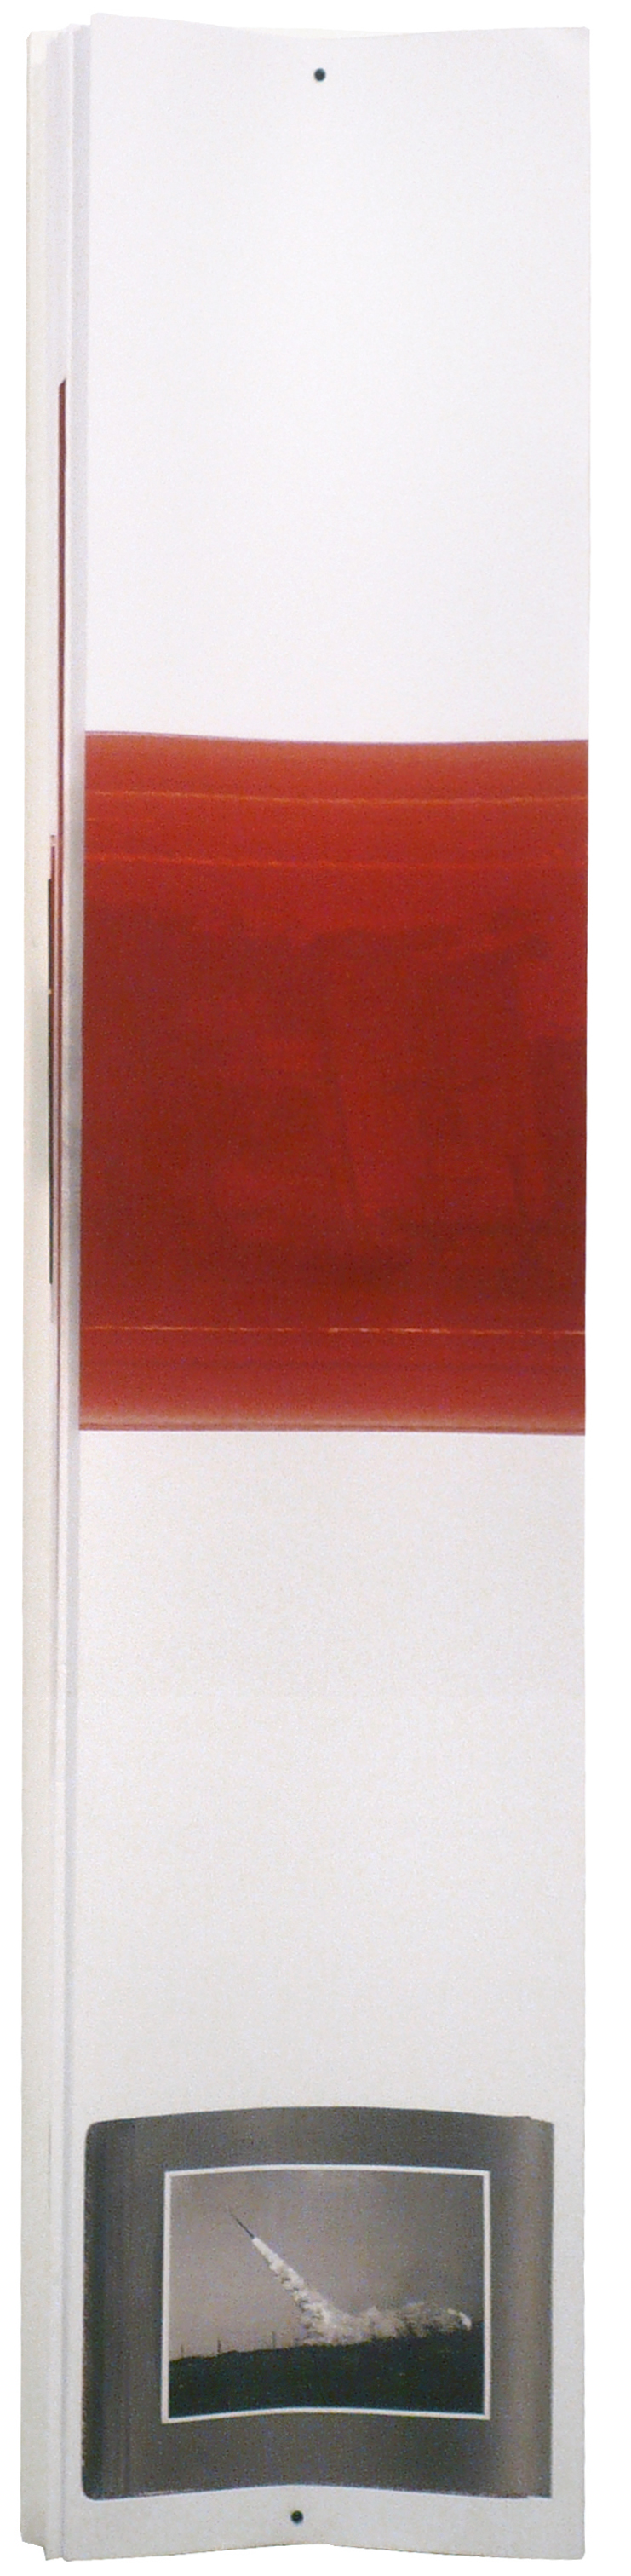 Joana Hadjithomas & Khalil Joreige - L'album du président (n°20) (Lebanese Rocket Society) , 2011-2012